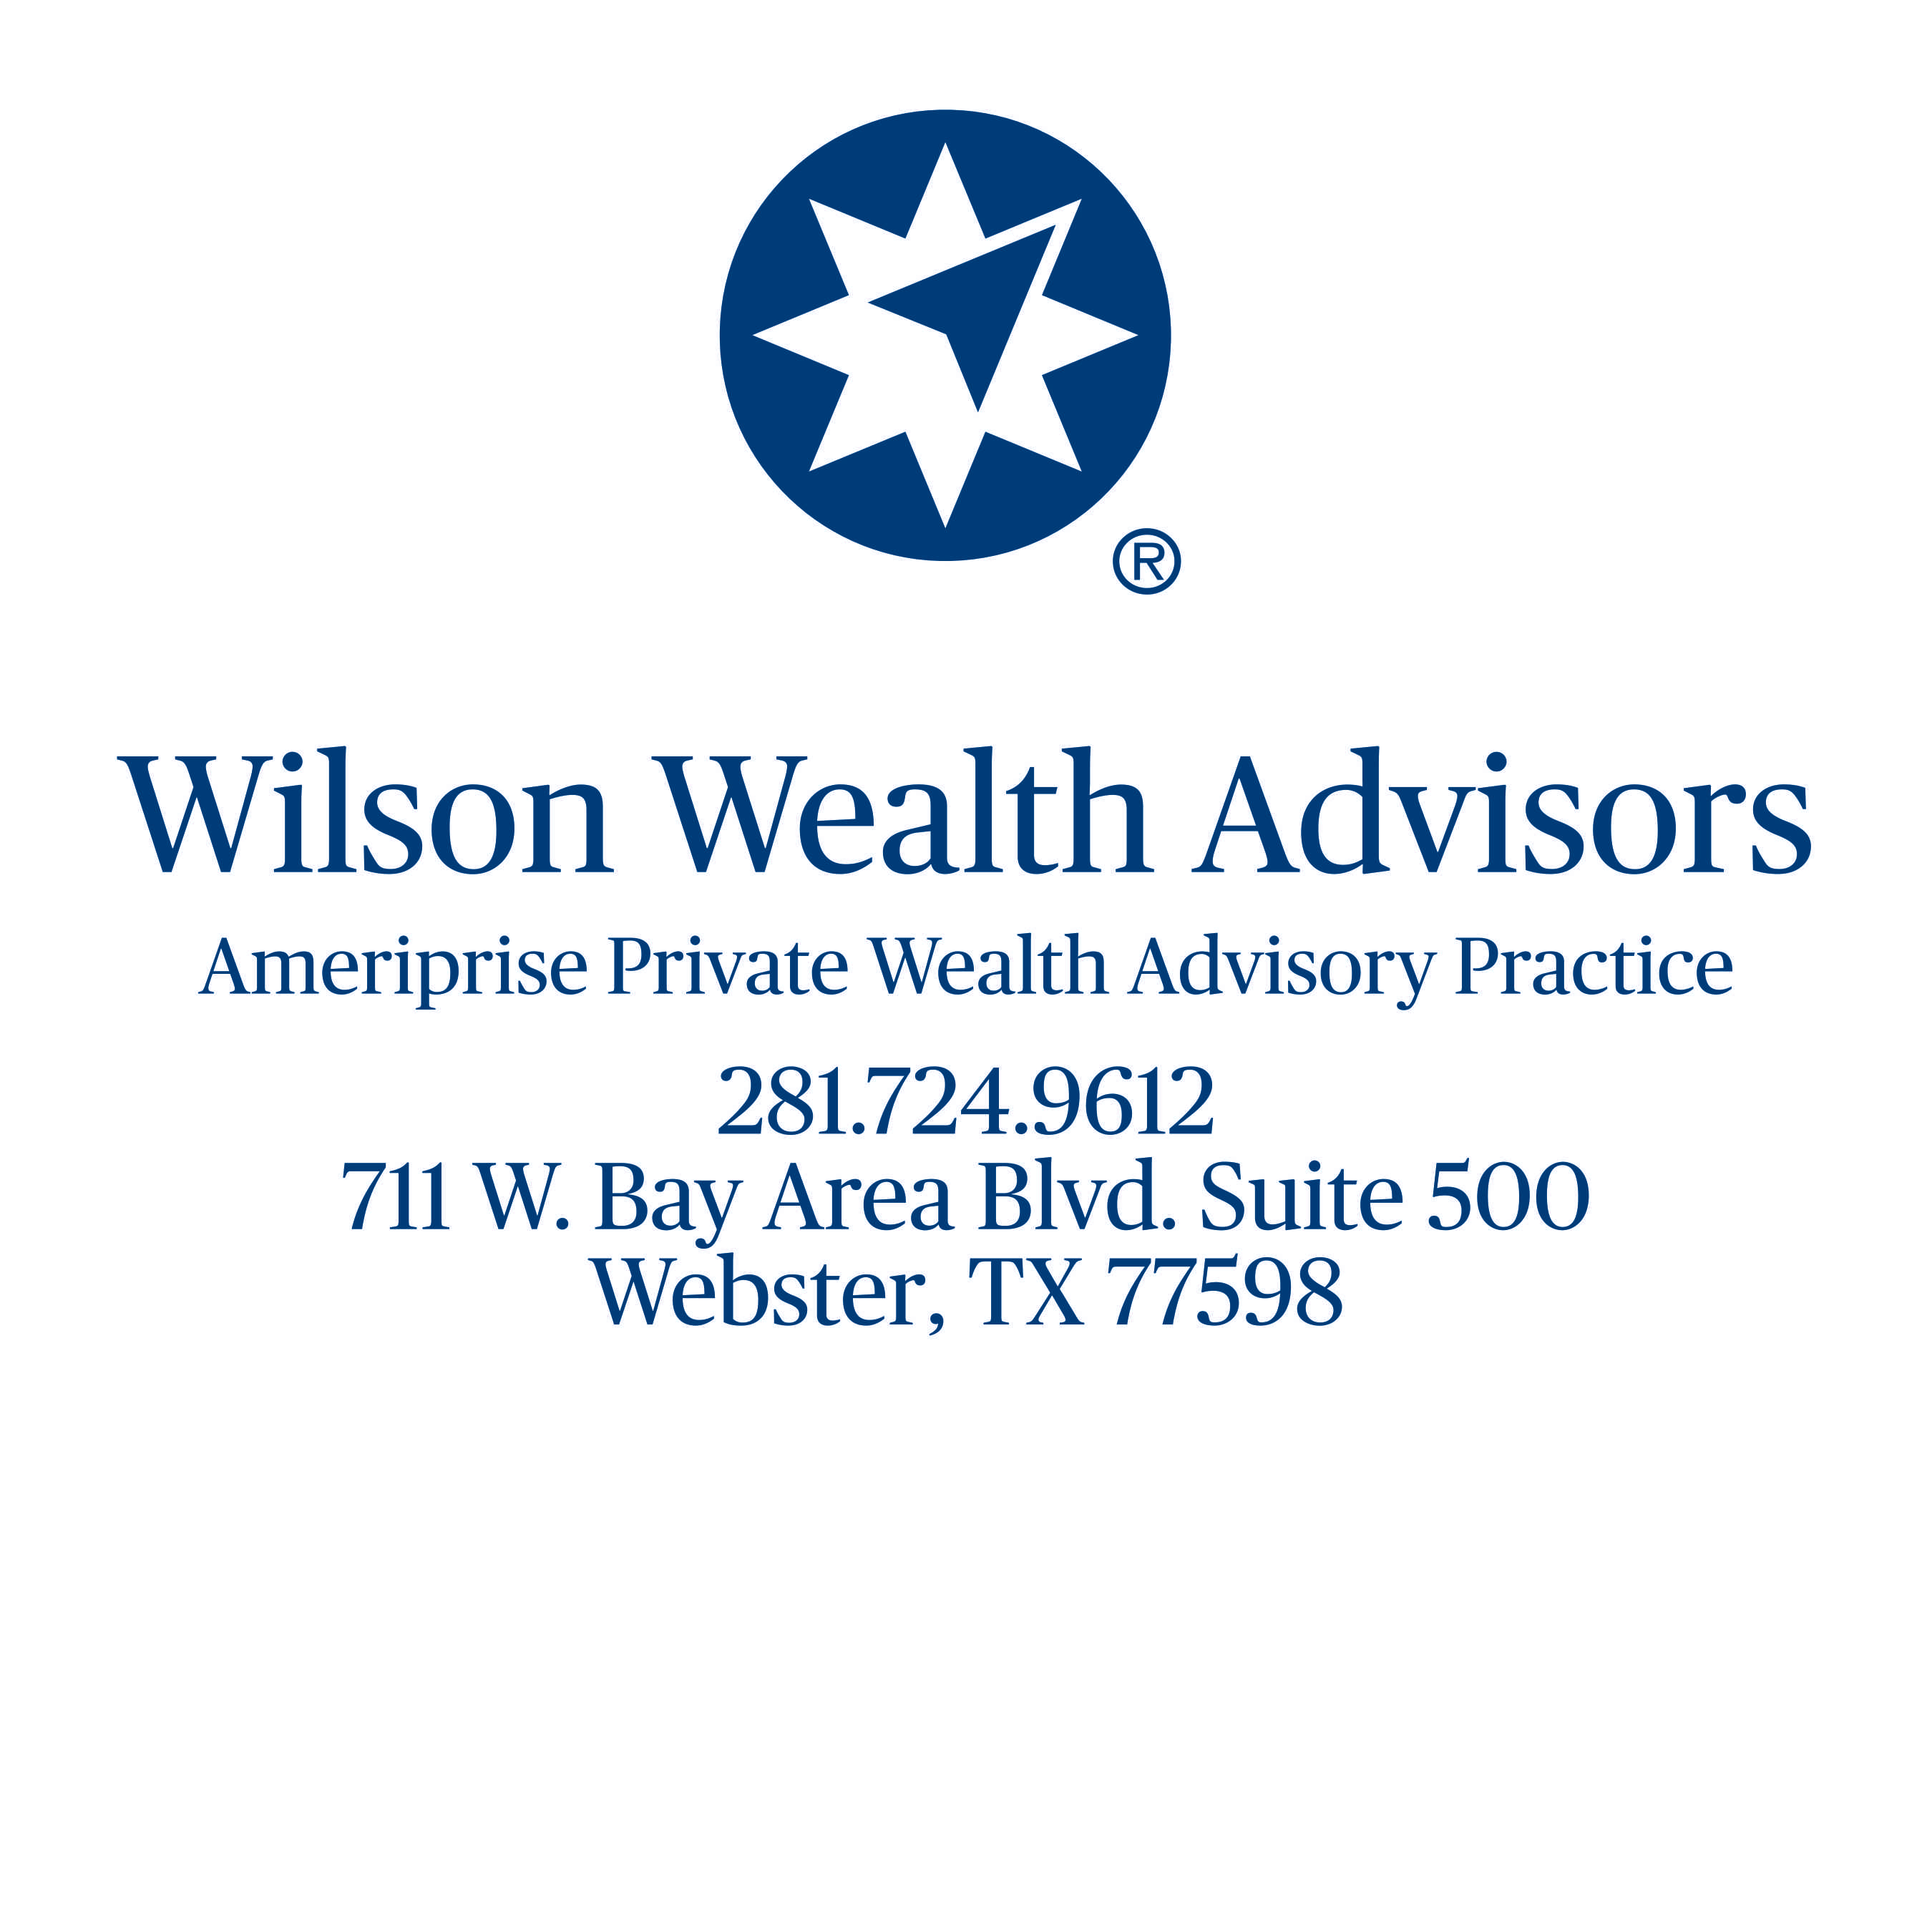 Wilson Wealth Advisors